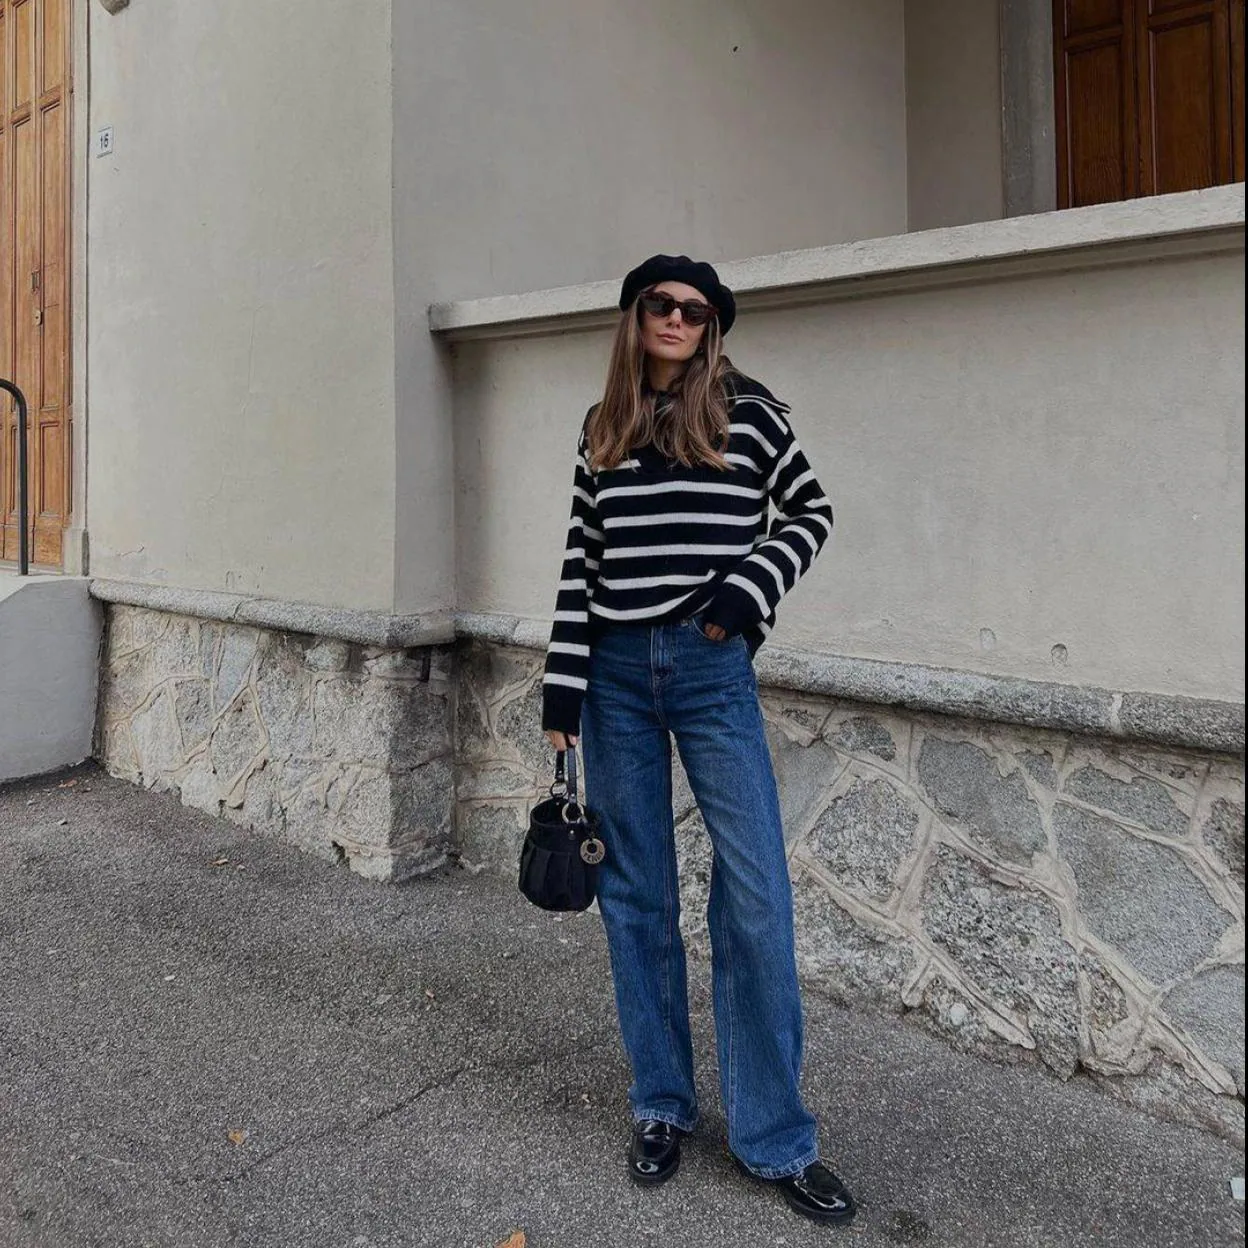 MODA: Camisetas de rayas para un look de estilo parisino encontrarás las rebajas de Massimo Dutti | Mujer Hoy